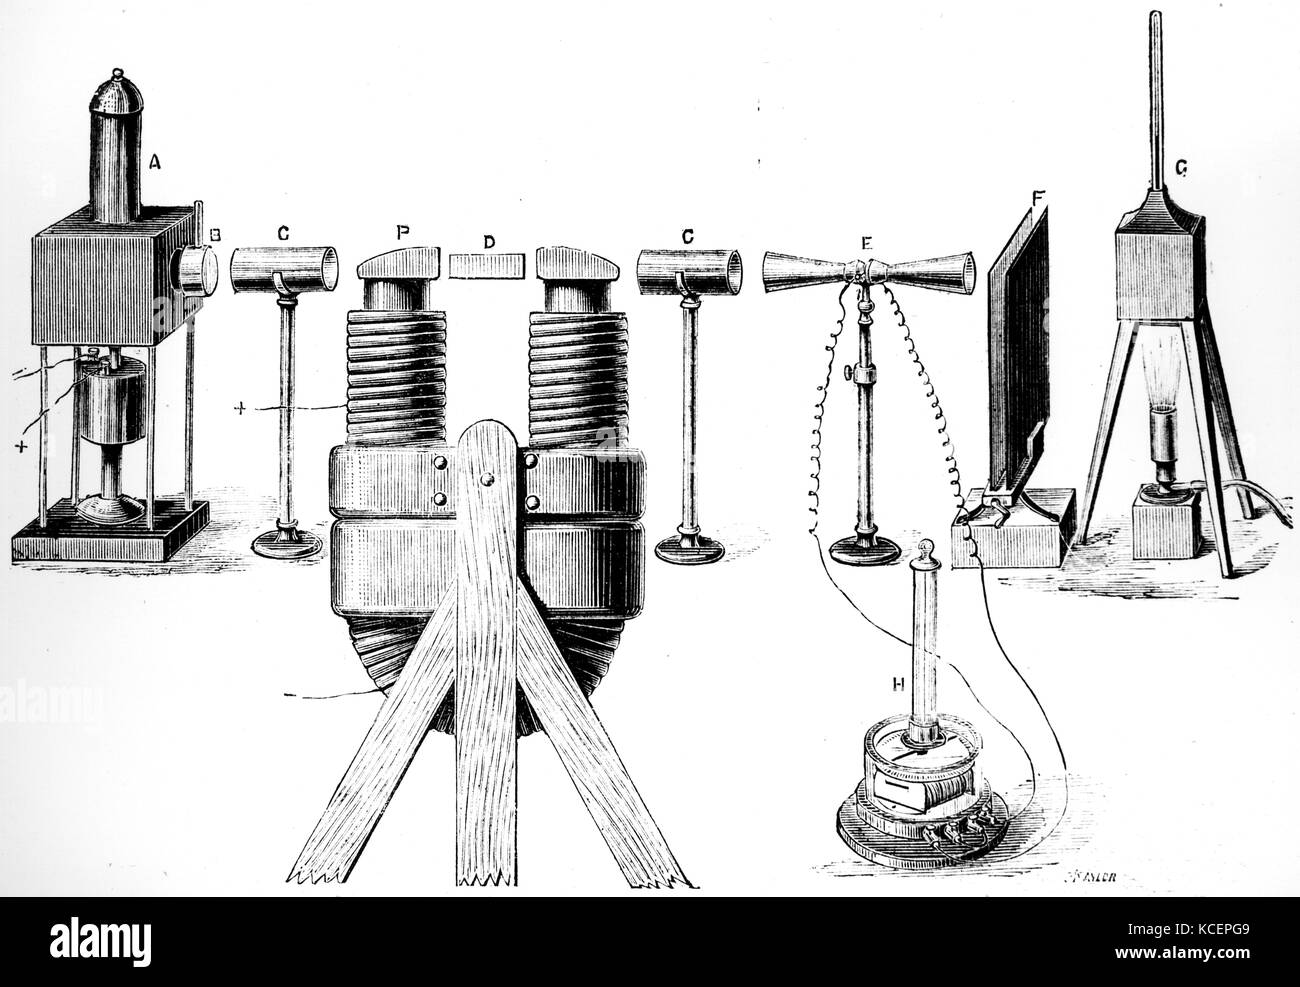 Diagramm eines Experiments von John Tyndall (1820-1893), einem irischen Physiker durchgeführt, die wellennatur von Licht und Wärme durch die Verwendung von polarisiertem Infra beweisen. Vom 19. Jahrhundert Stockfoto